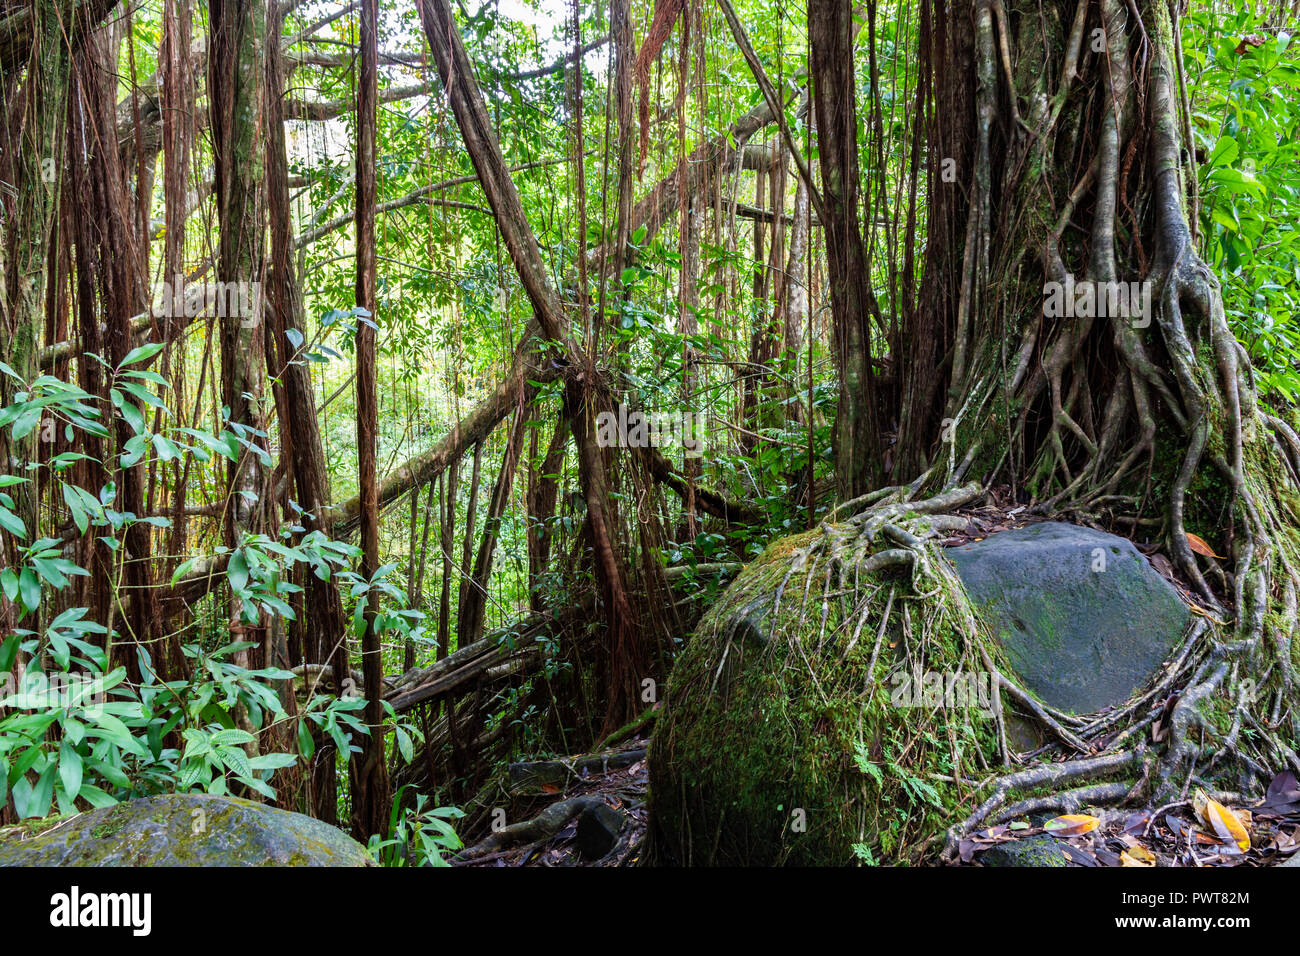 La foresta pluviale tropicale nel Akaka falls state park, su la Big Island delle Hawaii. Banyan olivi, vigne e altre fogliame con rocce e massi. Foto Stock